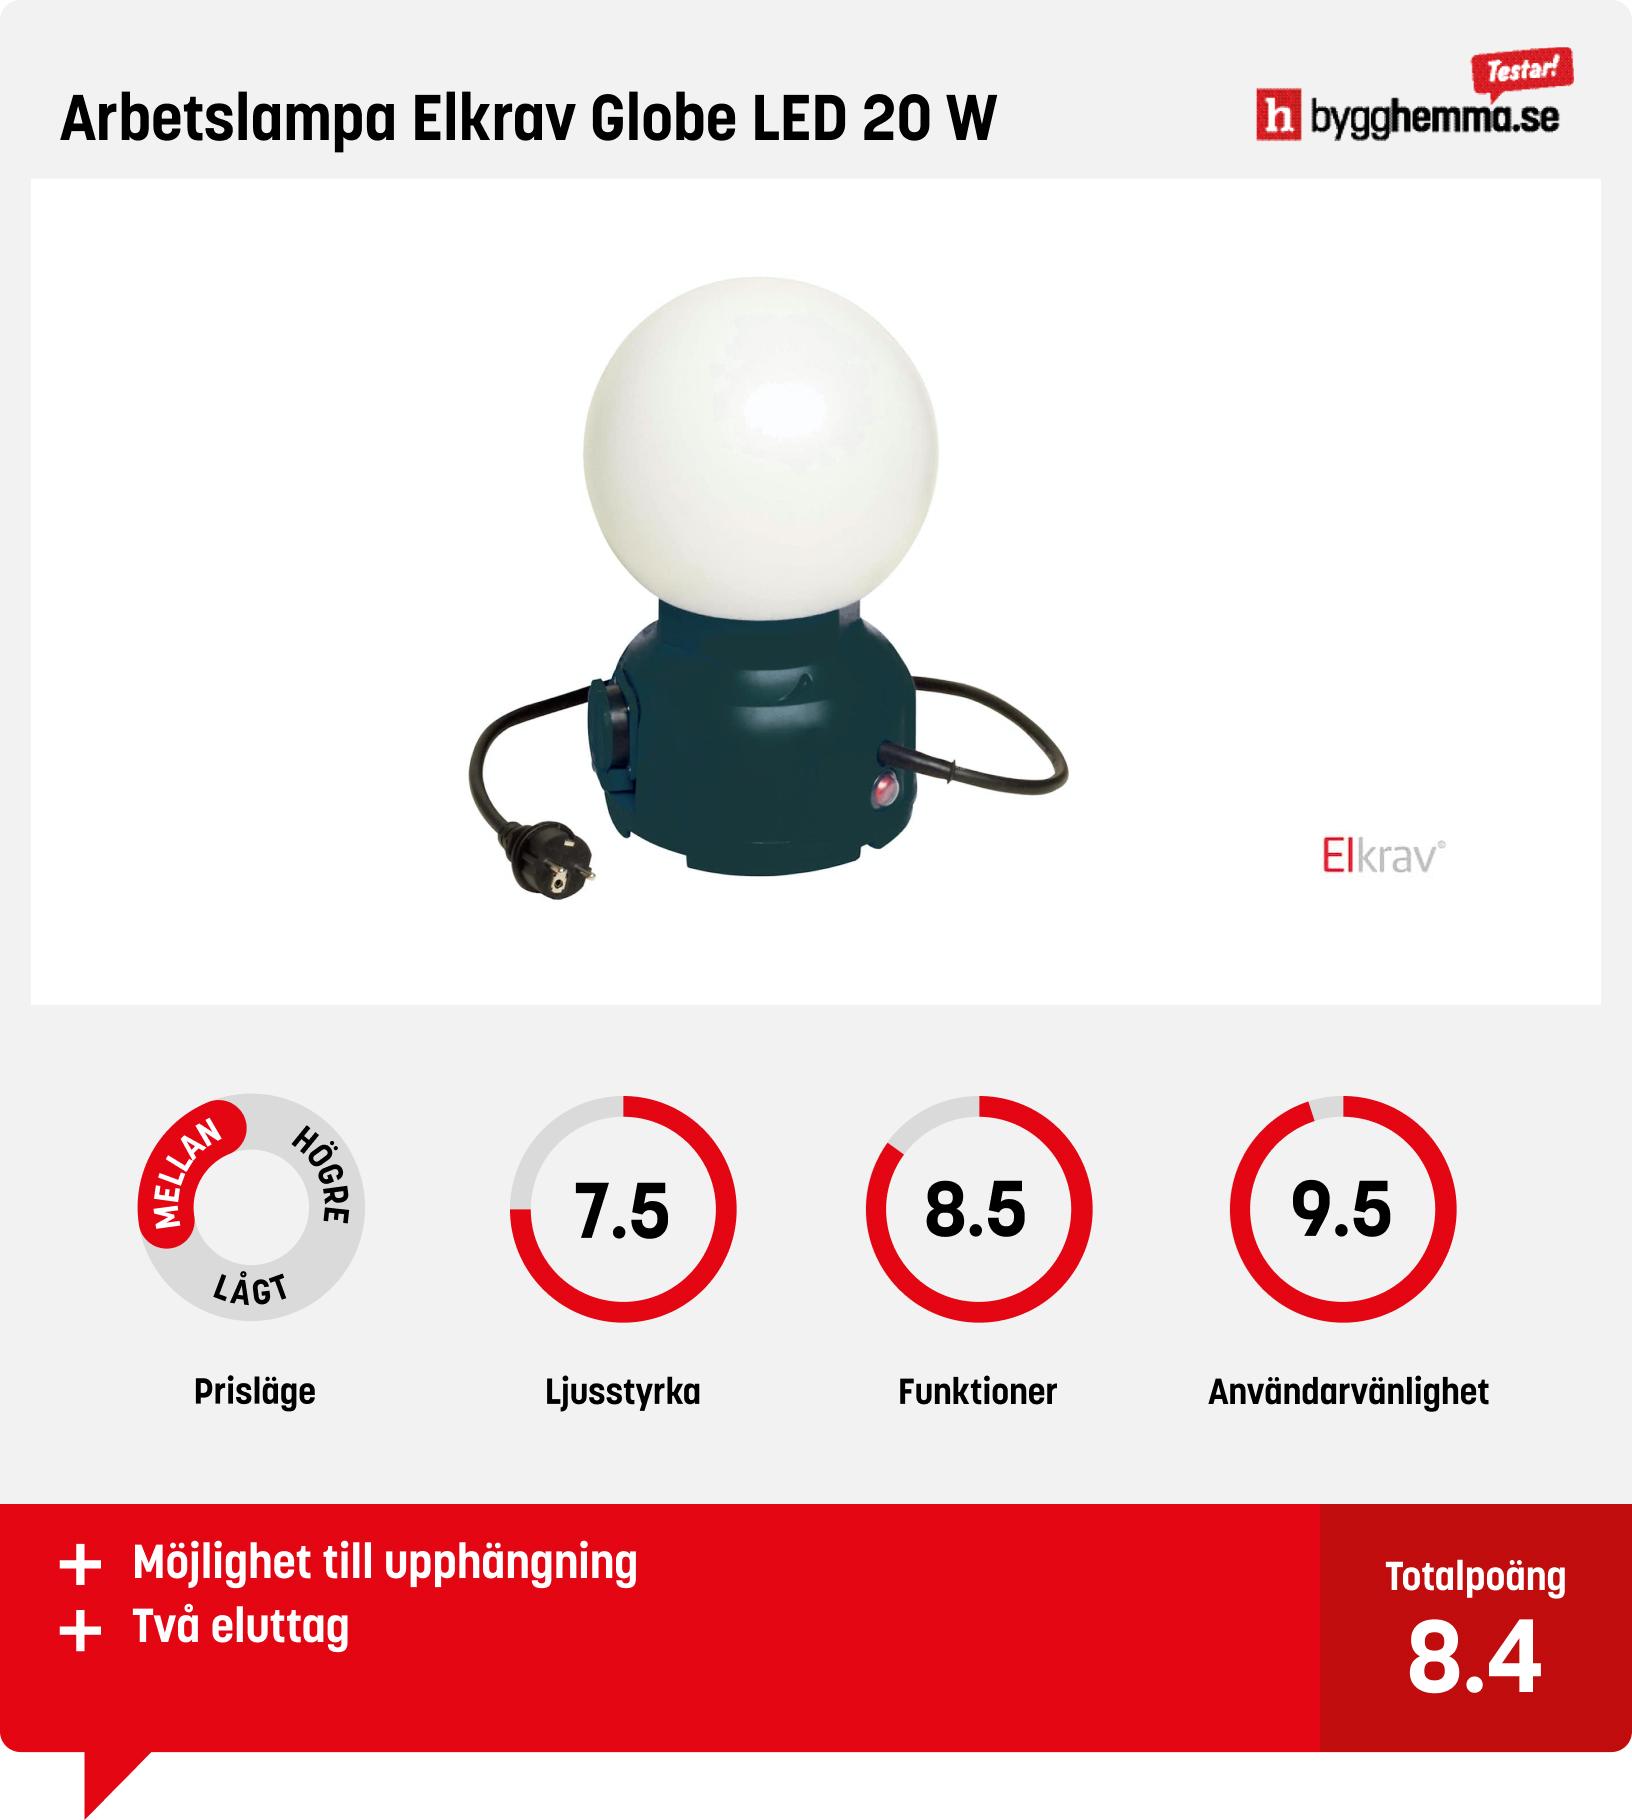 Arbetsbelysning bäst i test - Arbetslampa Elkrav Globe LED 20 W